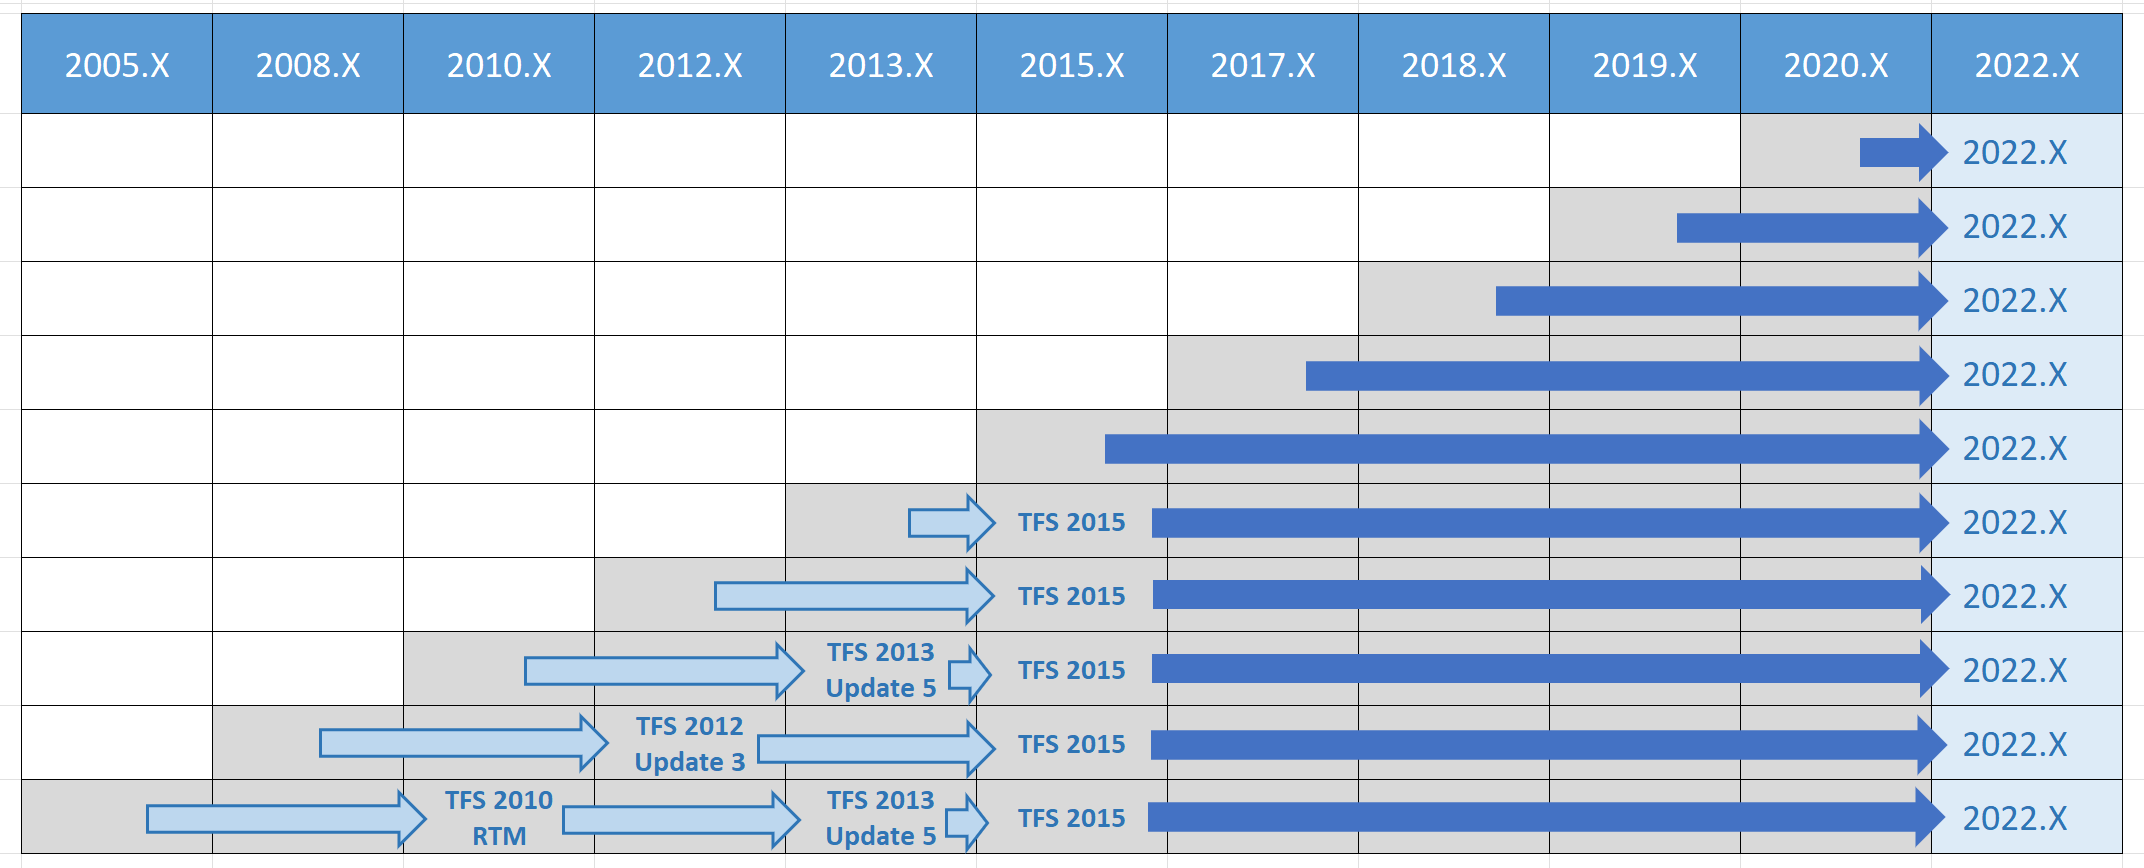 Matriz de caminho de atualização do Azure DevOps 2022 para todas as versões anteriores.